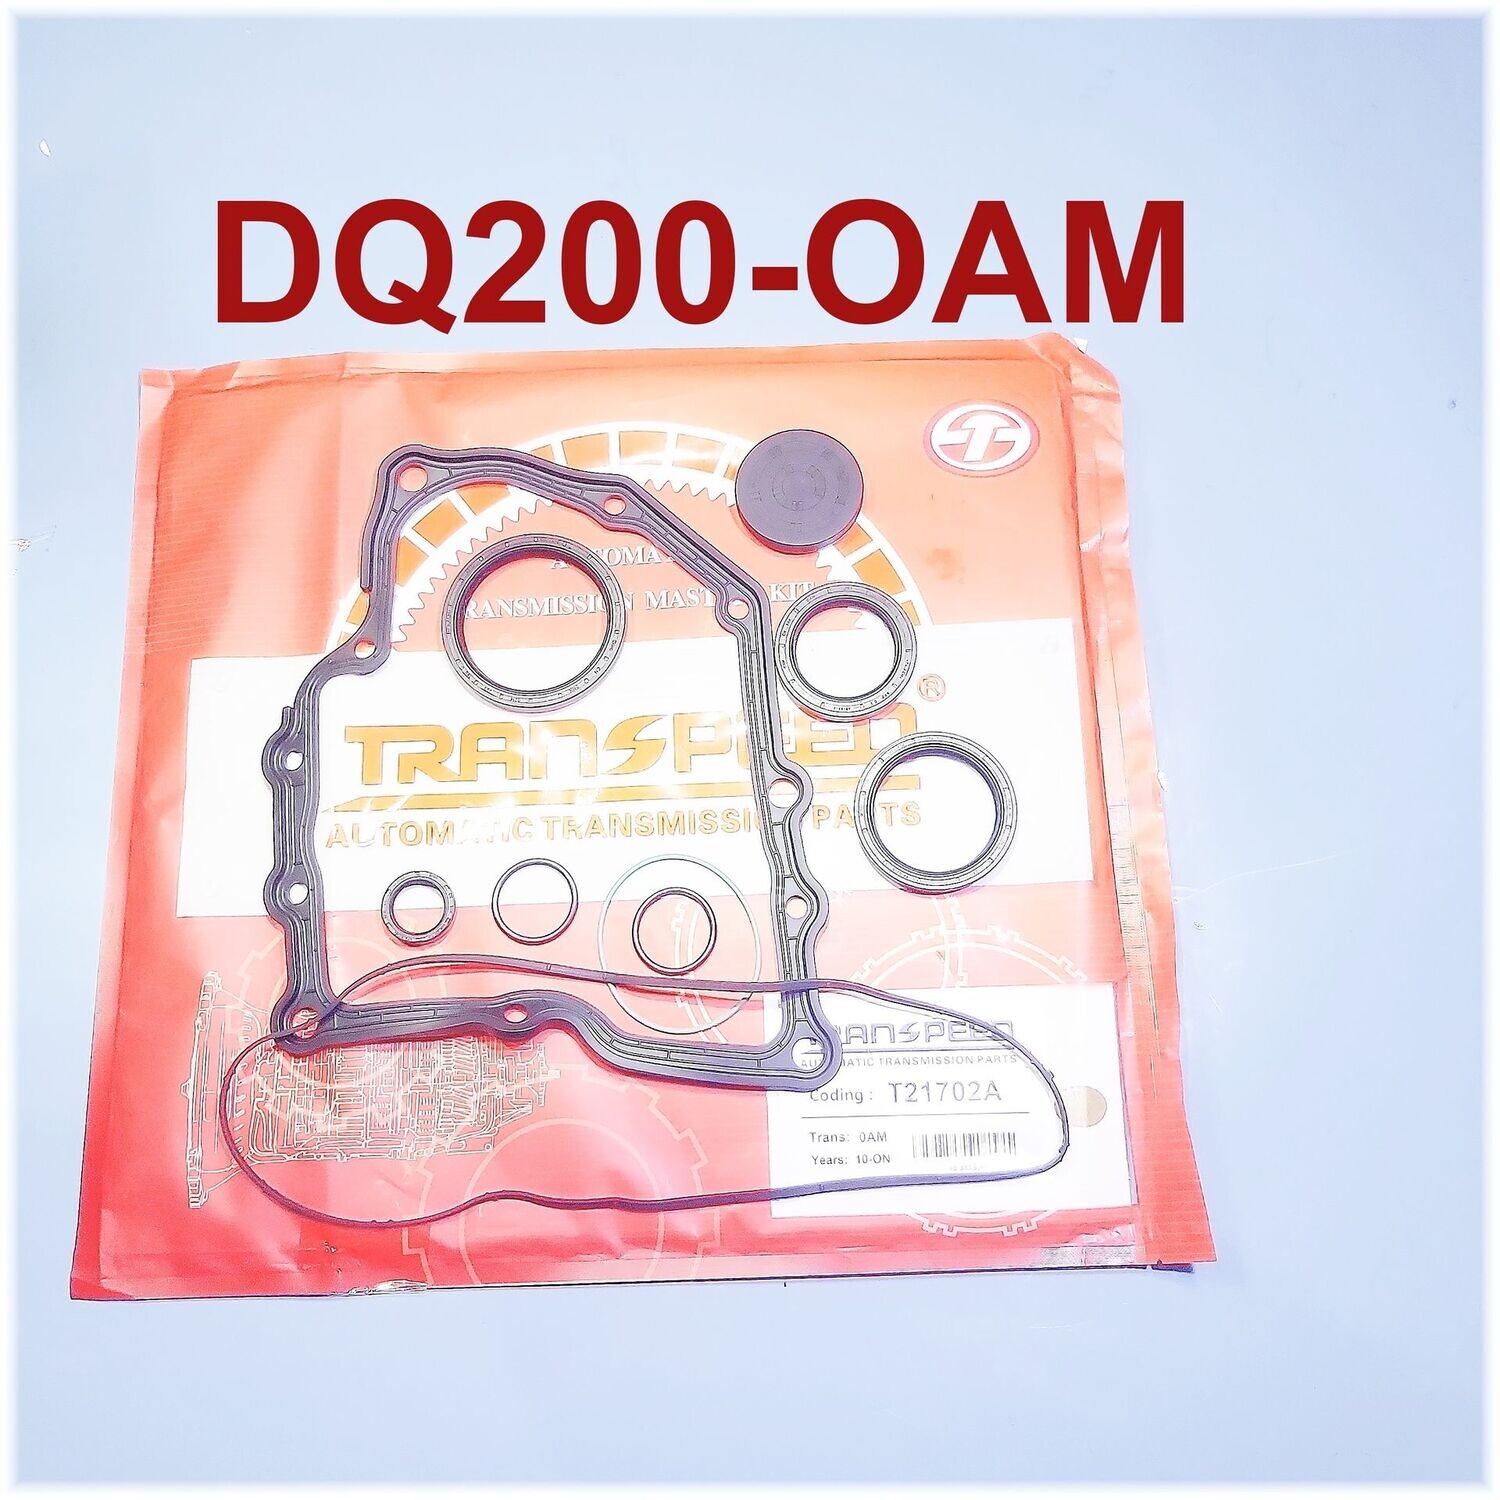 Reparatursatz für Mechatronik, 7 Gang DSG Getriebe Dq200